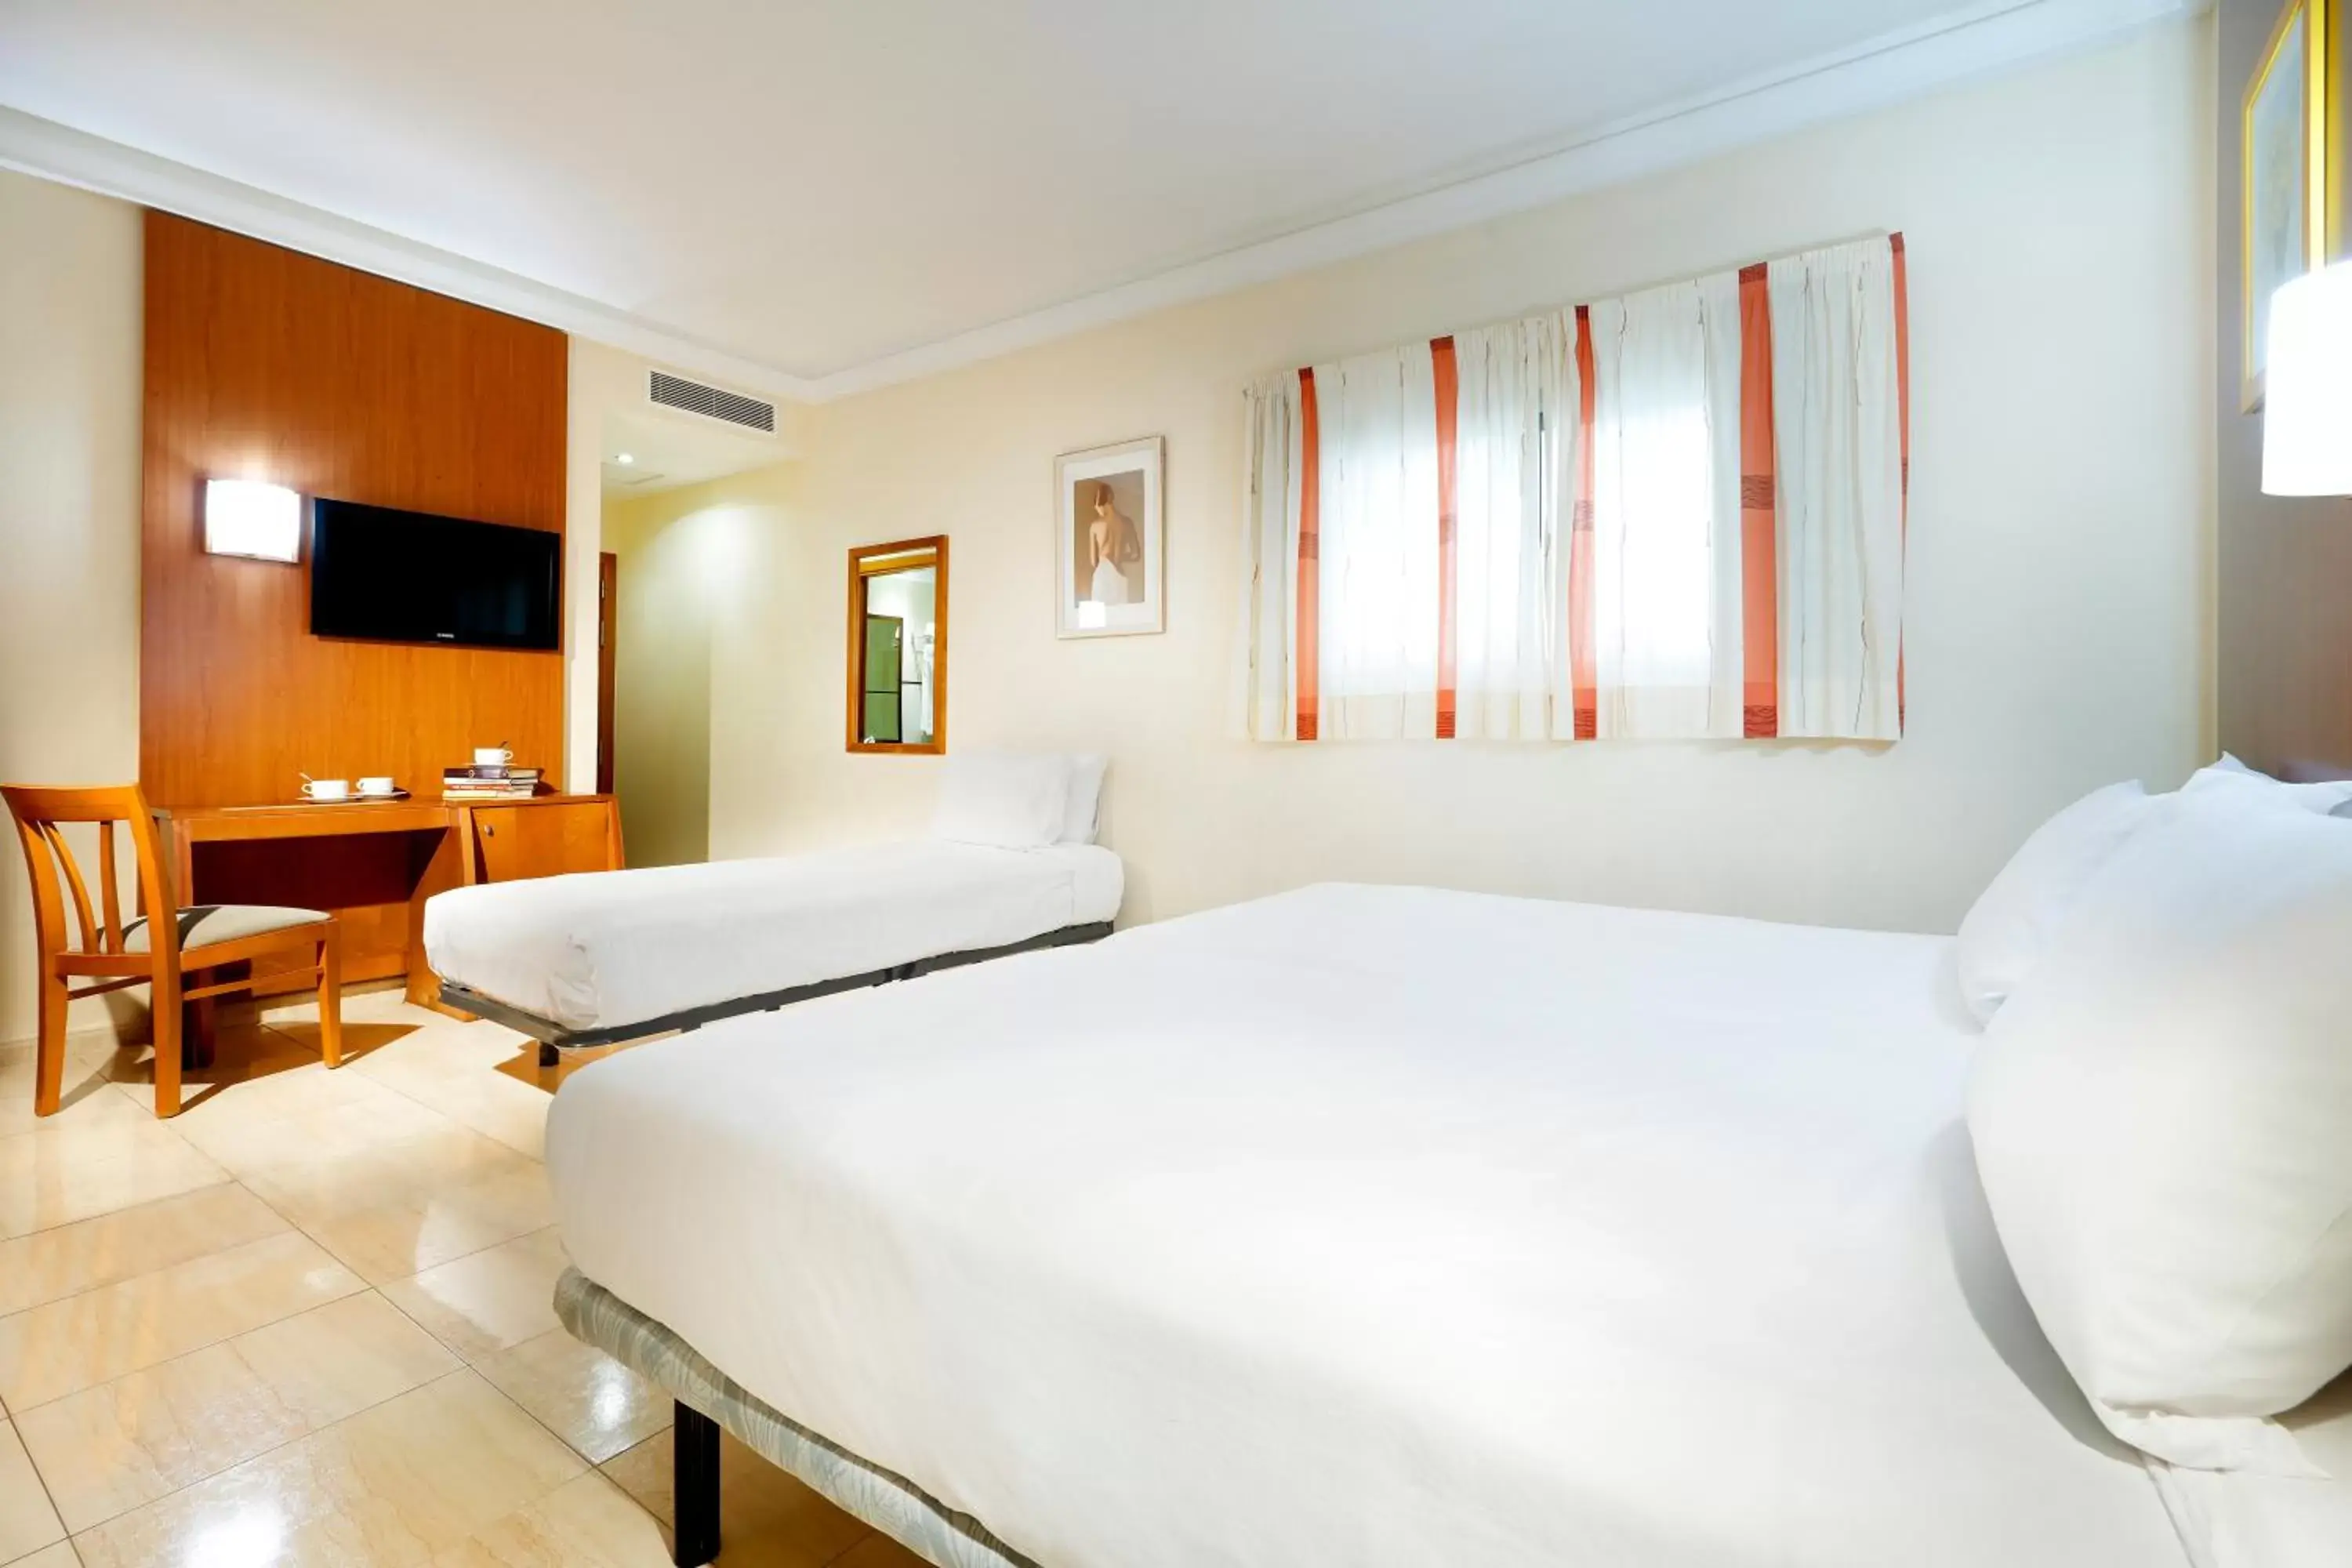 Bedroom, Bed in Crisol Alisios Canteras